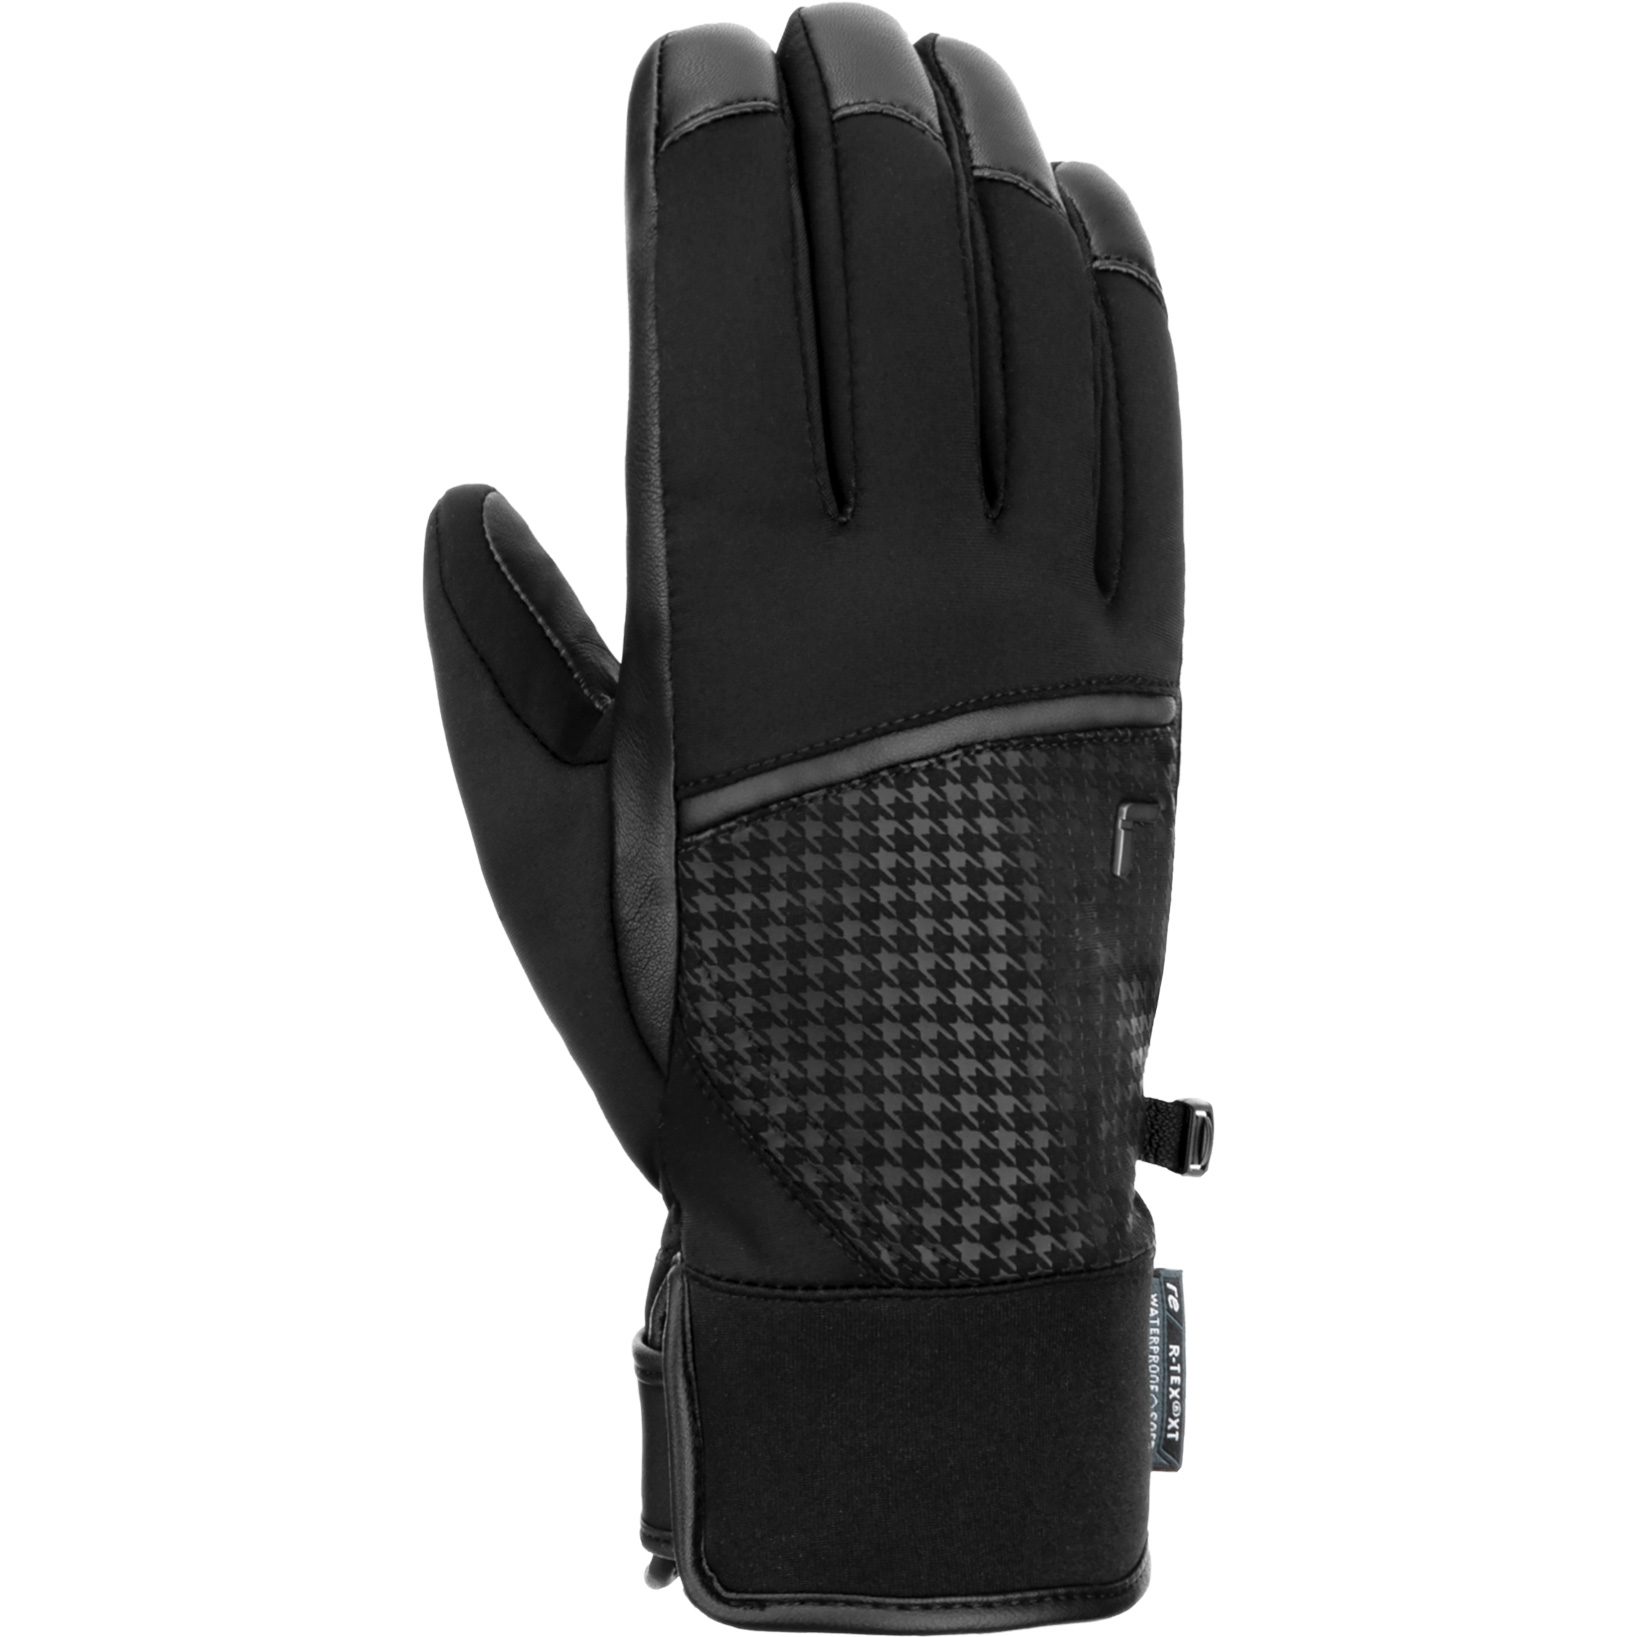 XT Handschuhe R-Tex® Bittl Mara Shop - kaufen schwarz im Reusch Sport